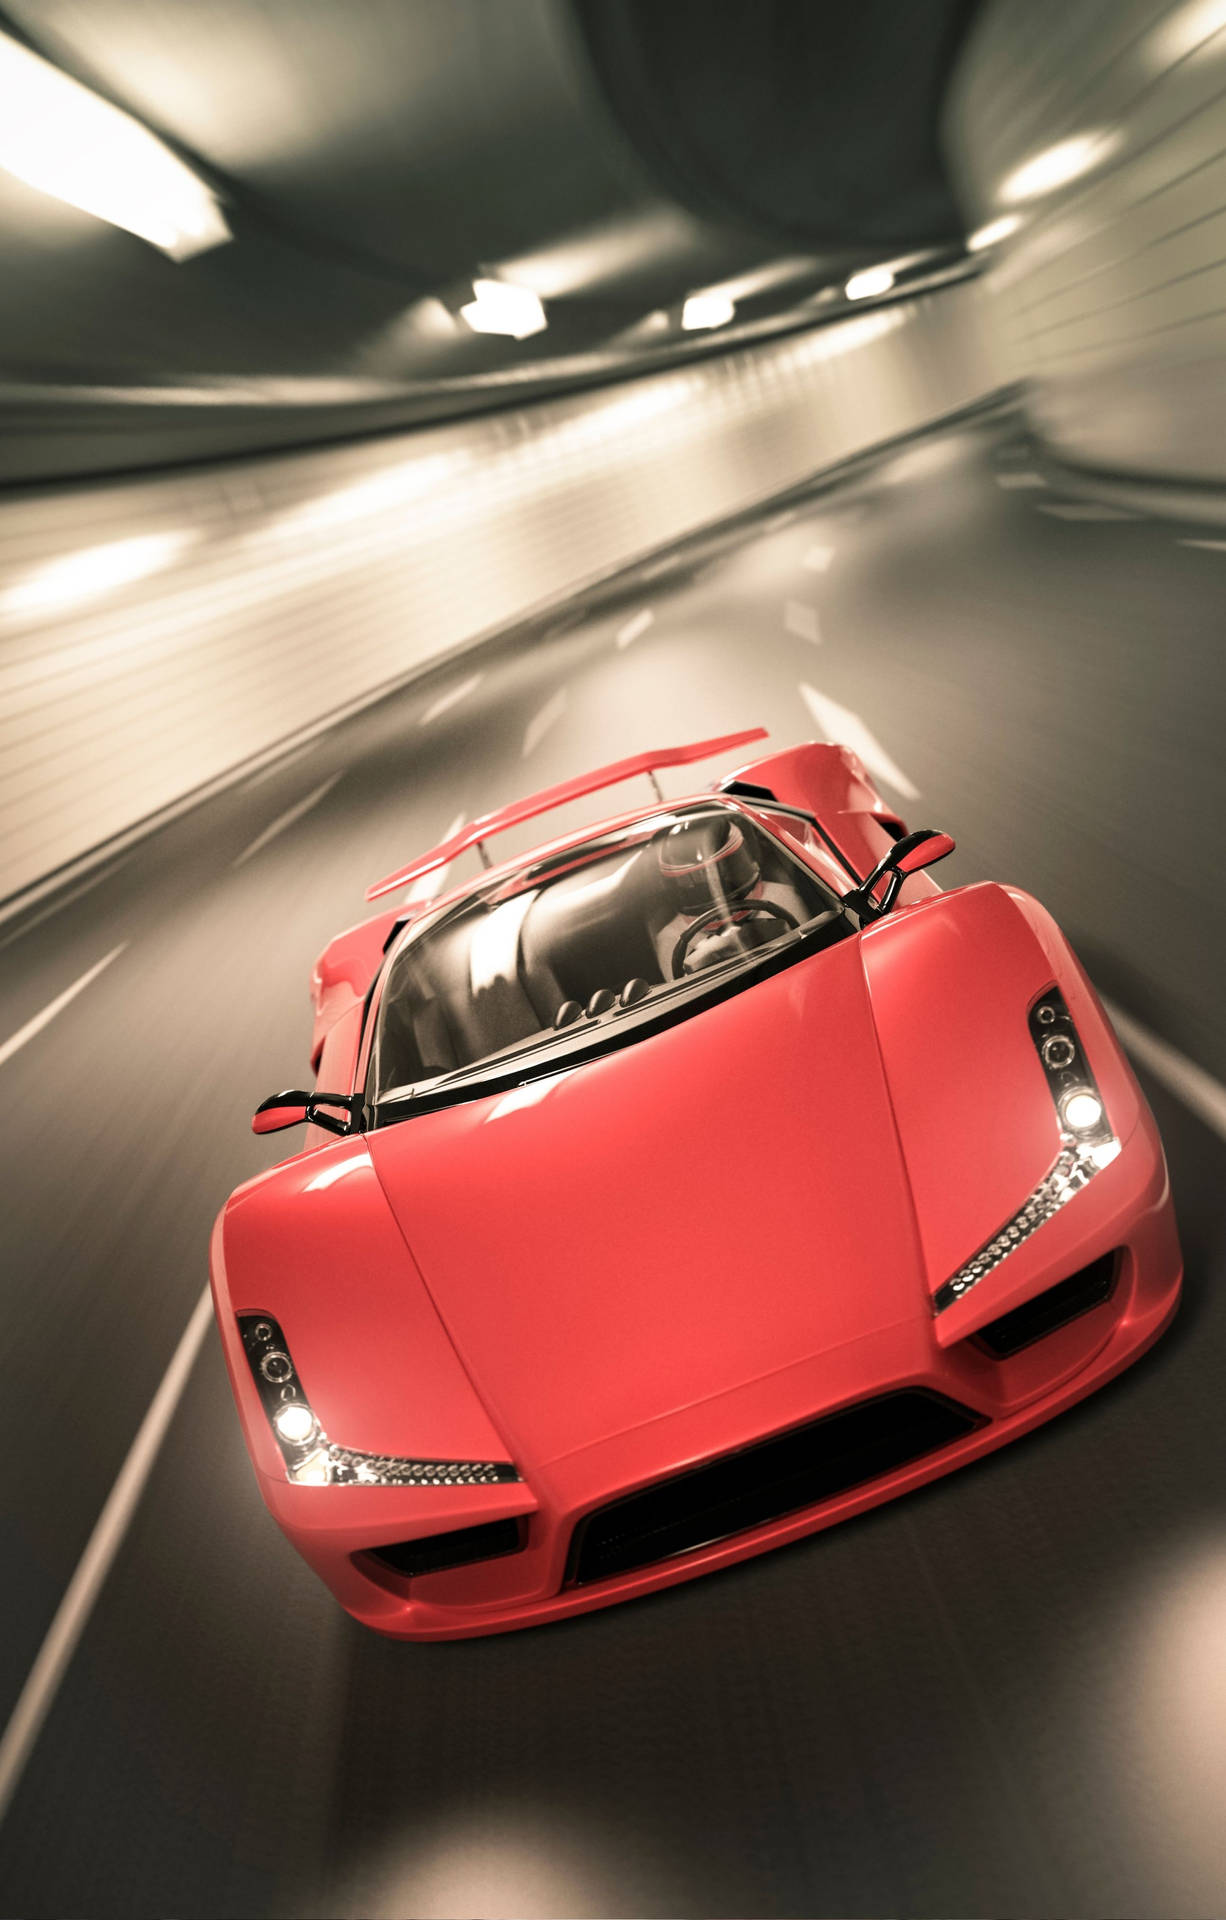 4k Lamborghini Iphone Red Blurred Wallpaper